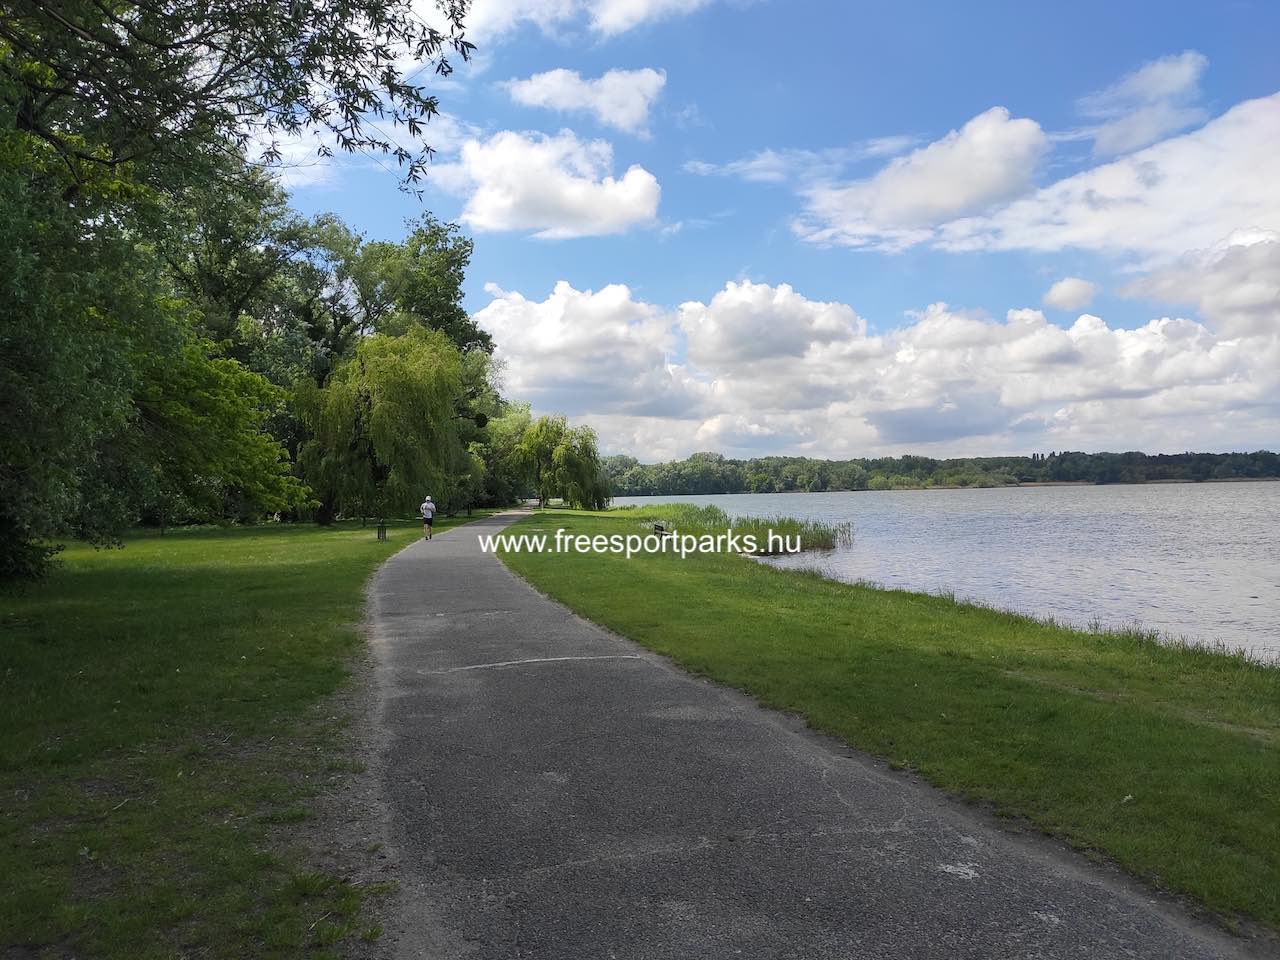 az Öreg-tó parti sétánya ideális futáshoz, nordic walkinghoz - Építők Parkja Tata - Free Sport Parks térkép